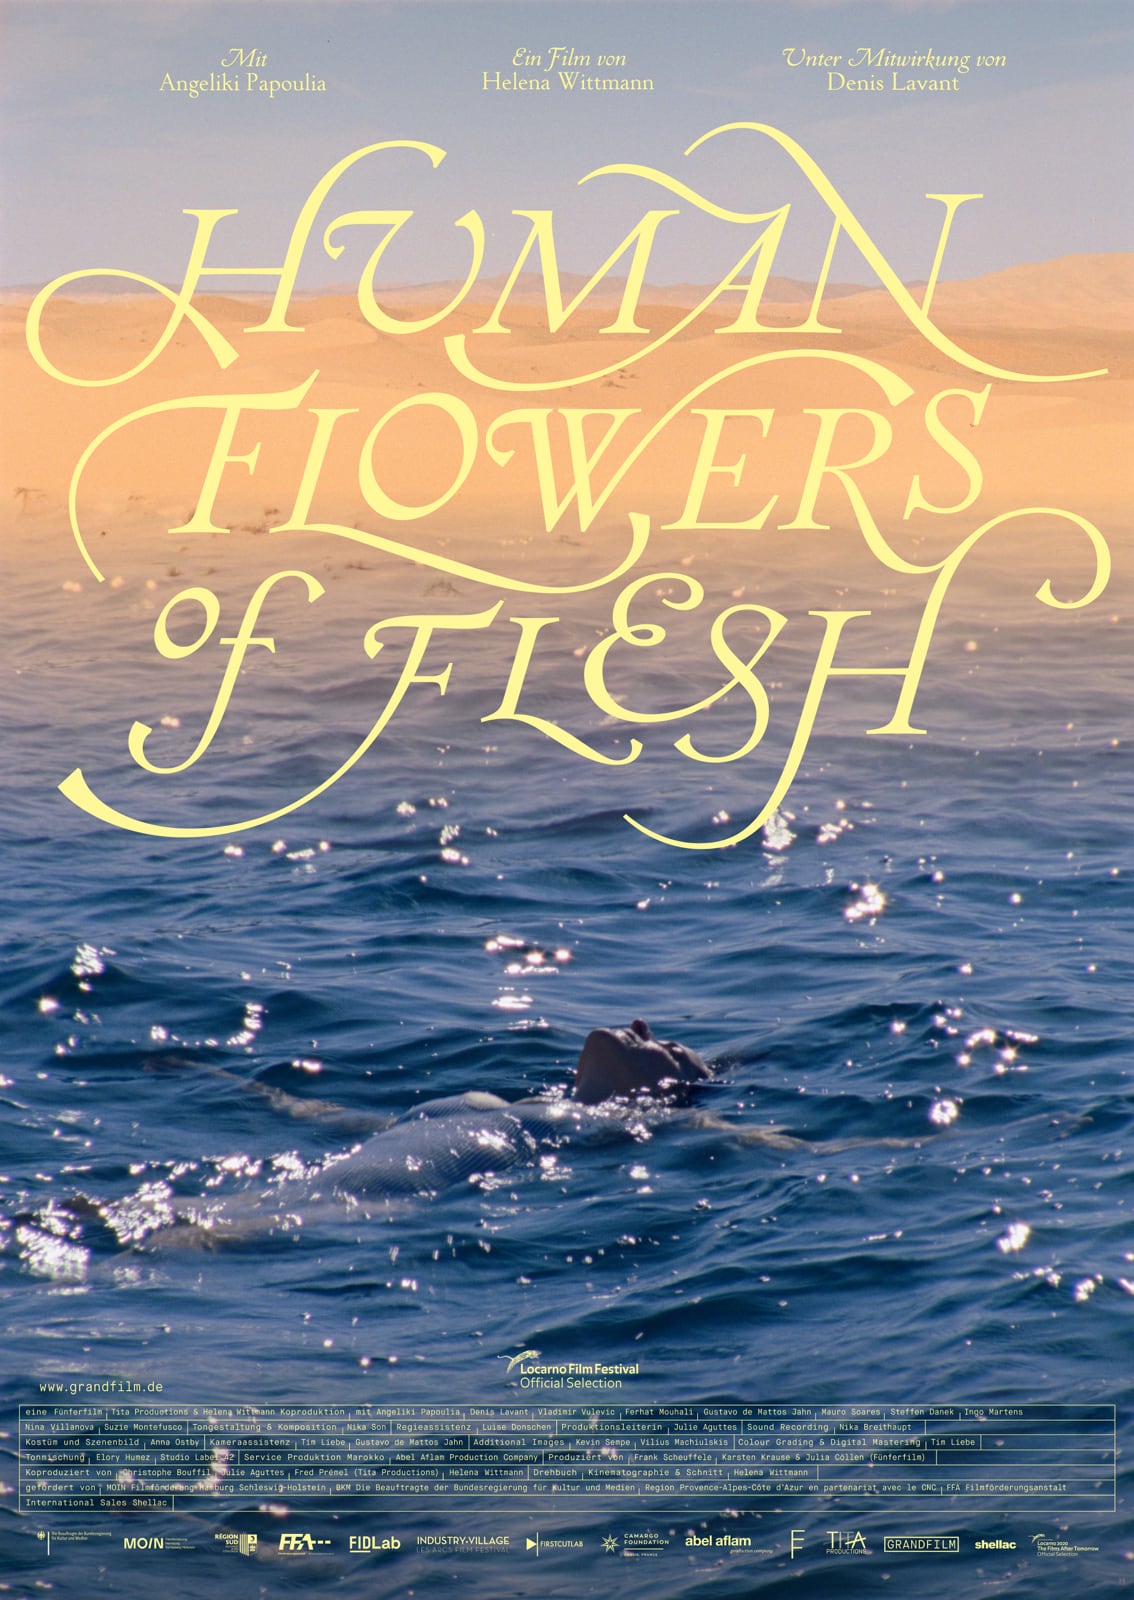 Die Hamburger Filmemacherin Helena Wittmann feierte mit ihrem Film "Human Flowers of Flesh" Premiere im Wettbewerb von Locarno. | MOIN Filmförderung